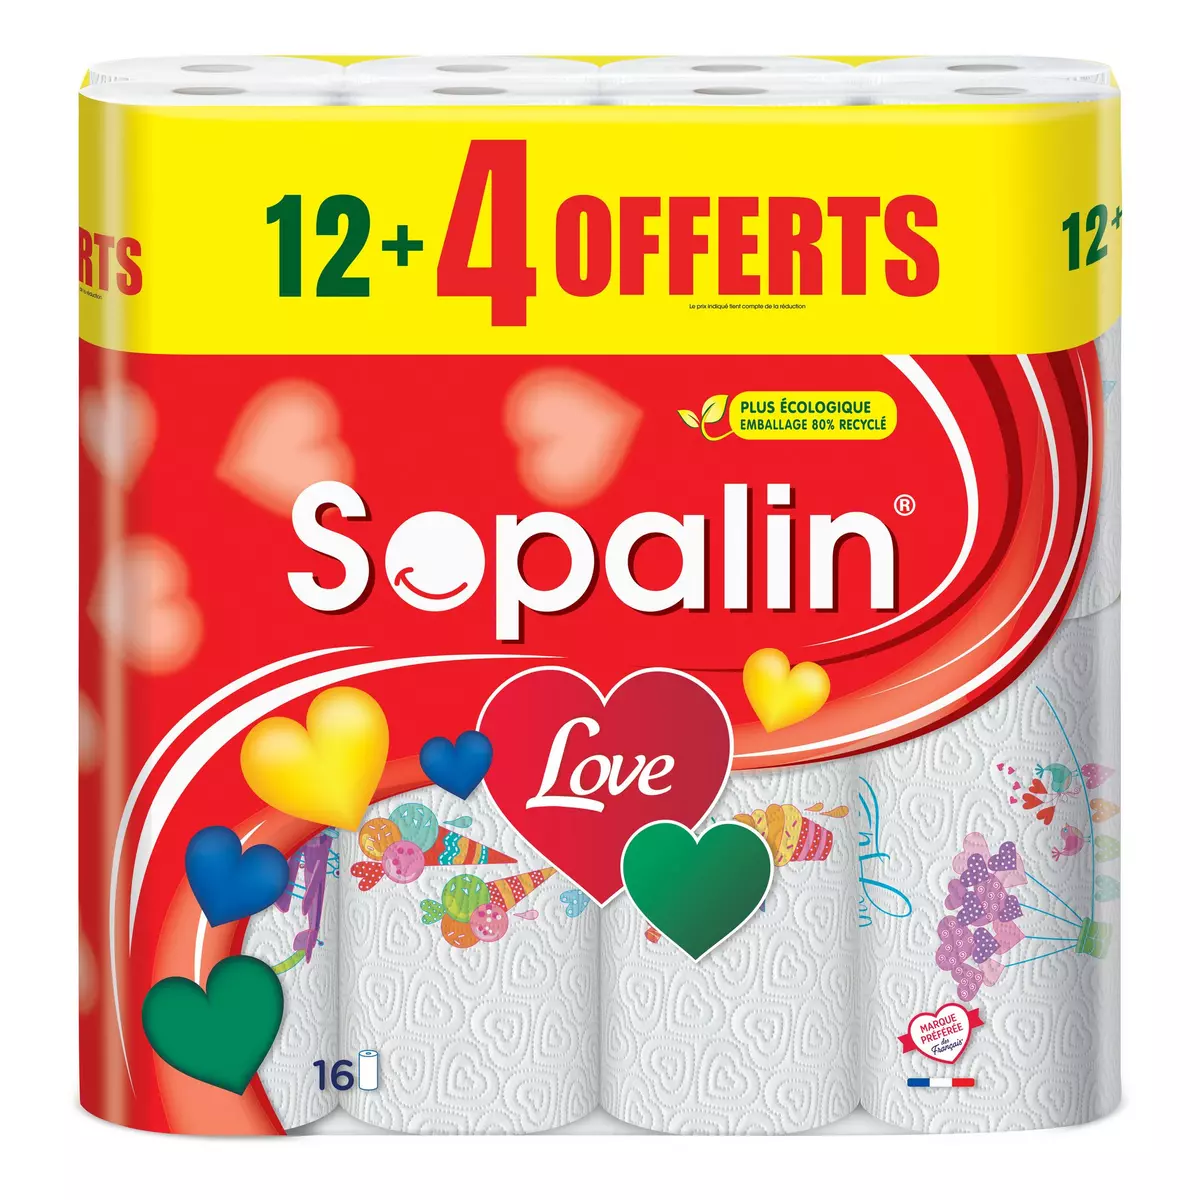 Promo Essuie tout SOPALIN LOVE chez E.Leclerc